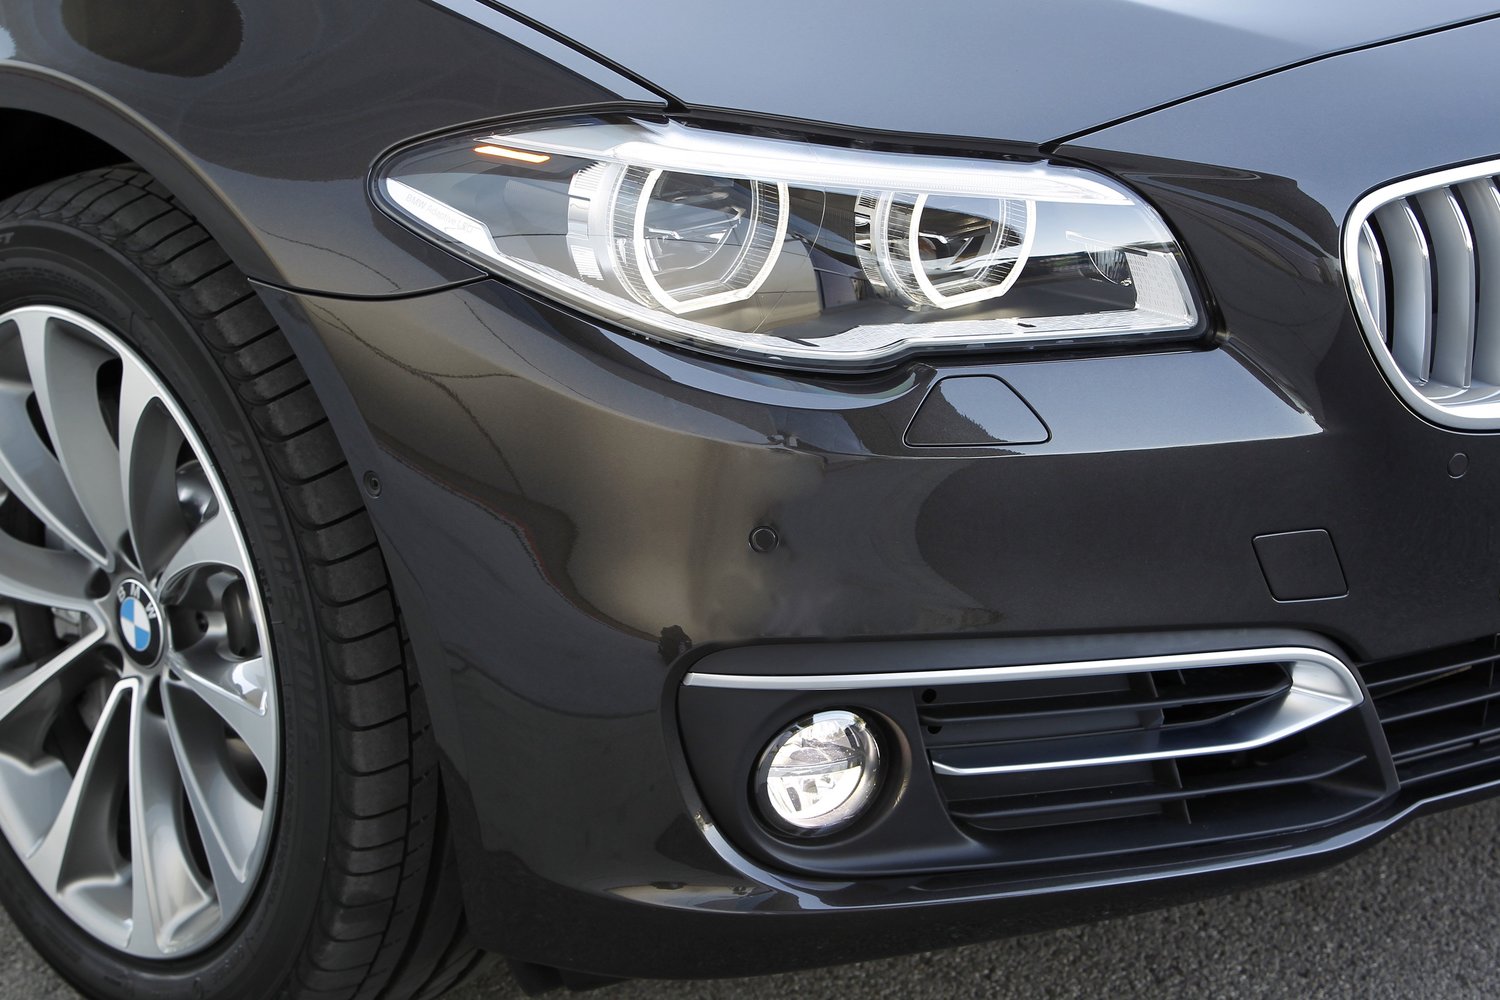 универсал BMW 5er 2013 - 2016г выпуска модификация 2.0 AT (143 л.с.)